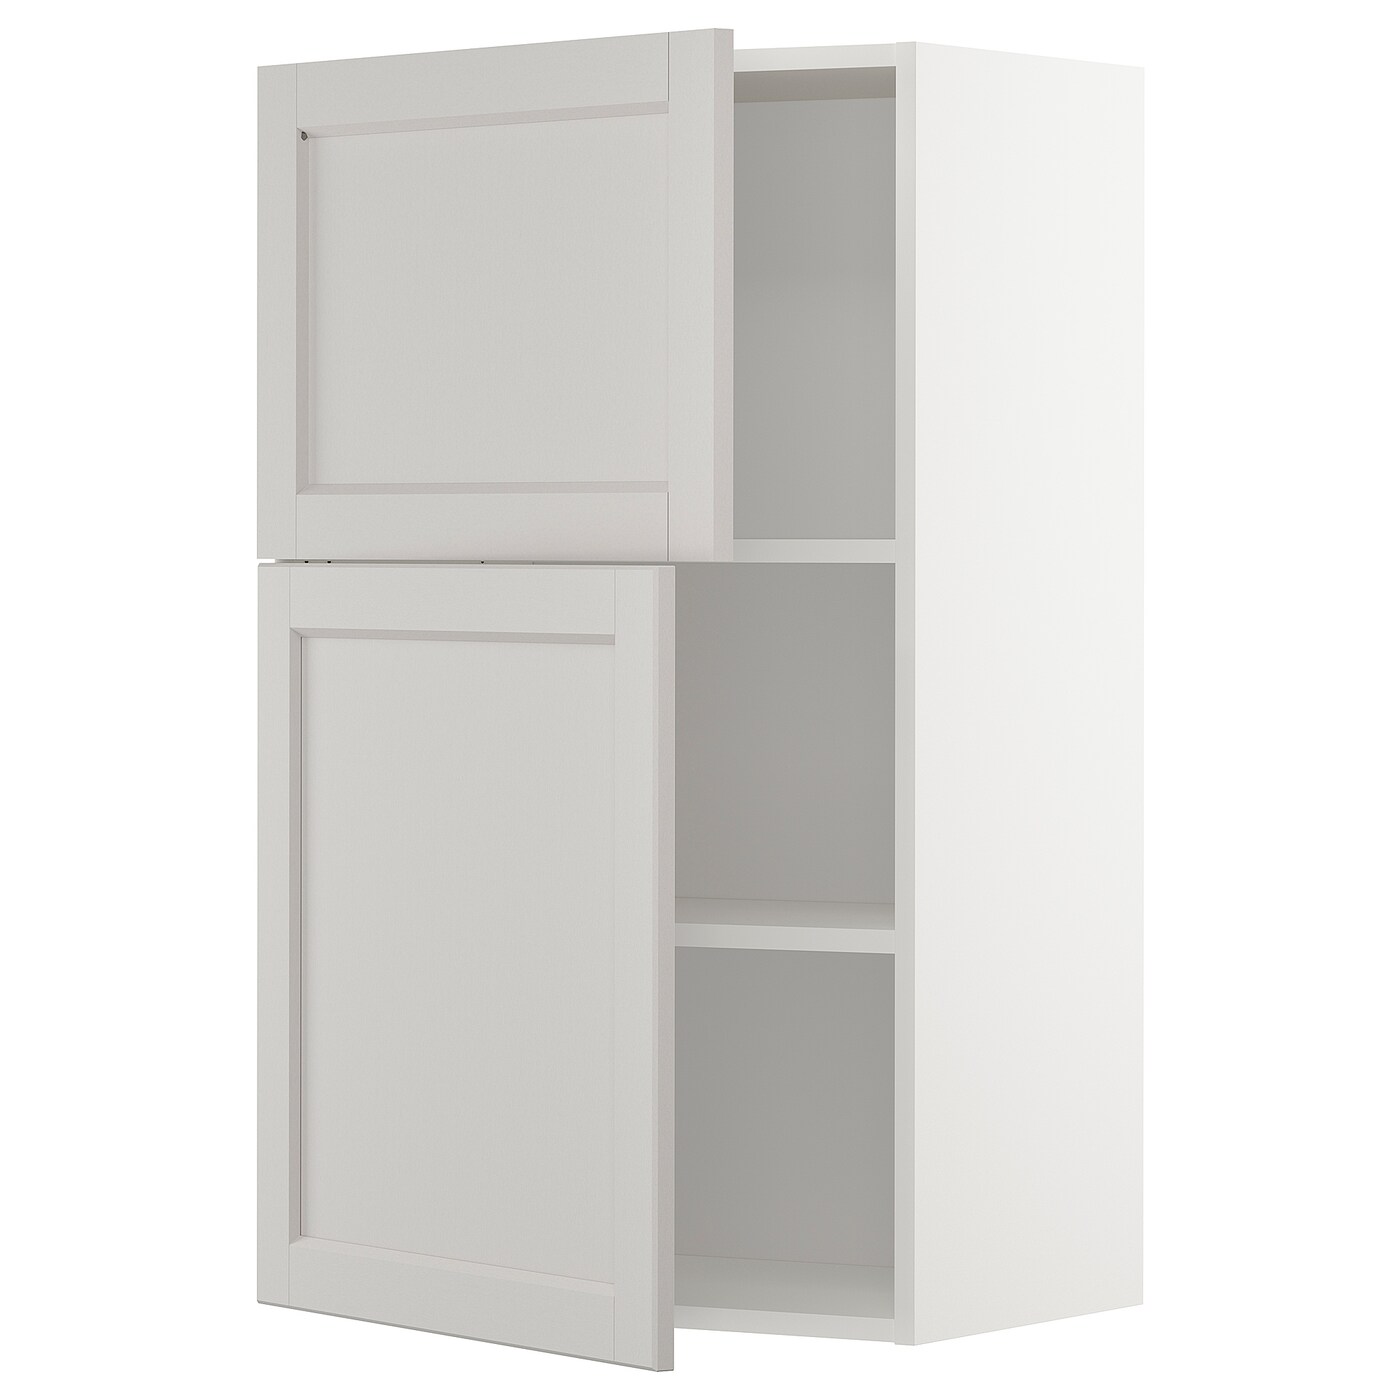 Навесной шкаф с полкой - METOD IKEA/ МЕТОД ИКЕА, 100х60 см, белый/светло-серый